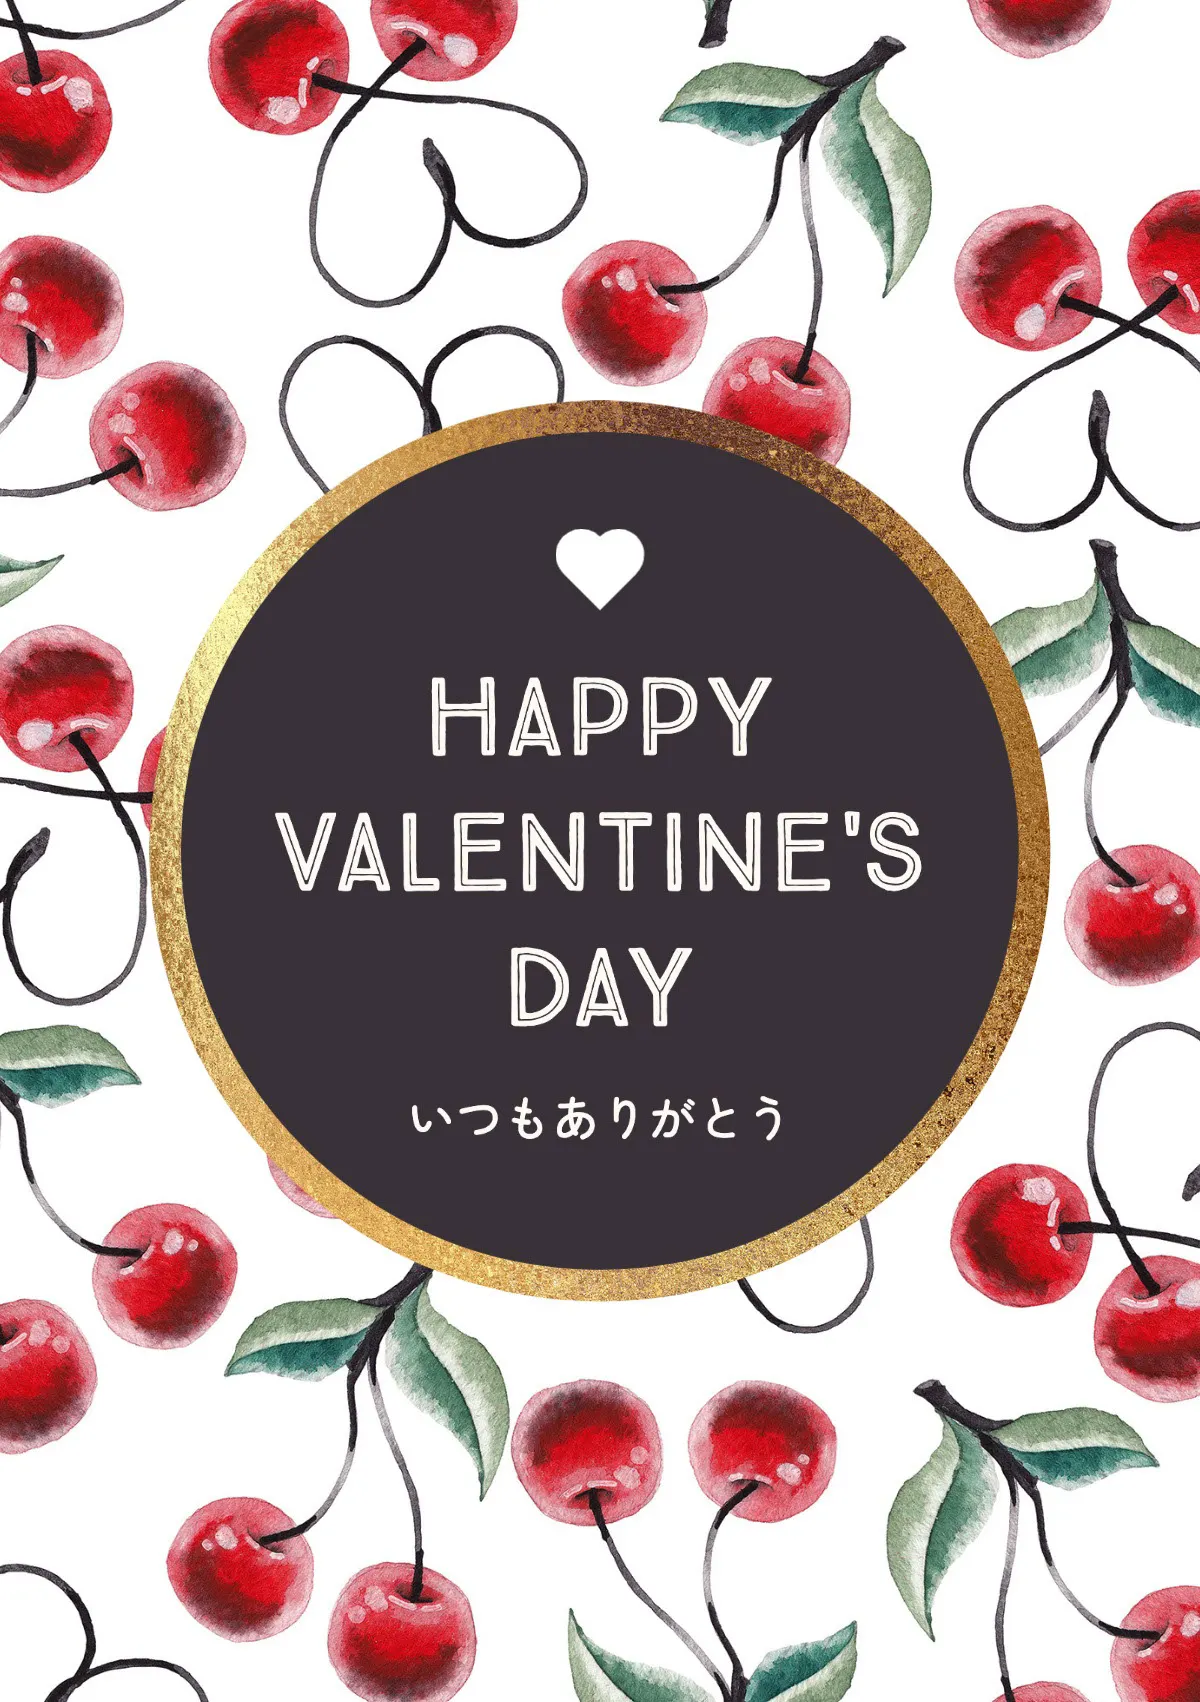 Cherry heart Valentine's day card